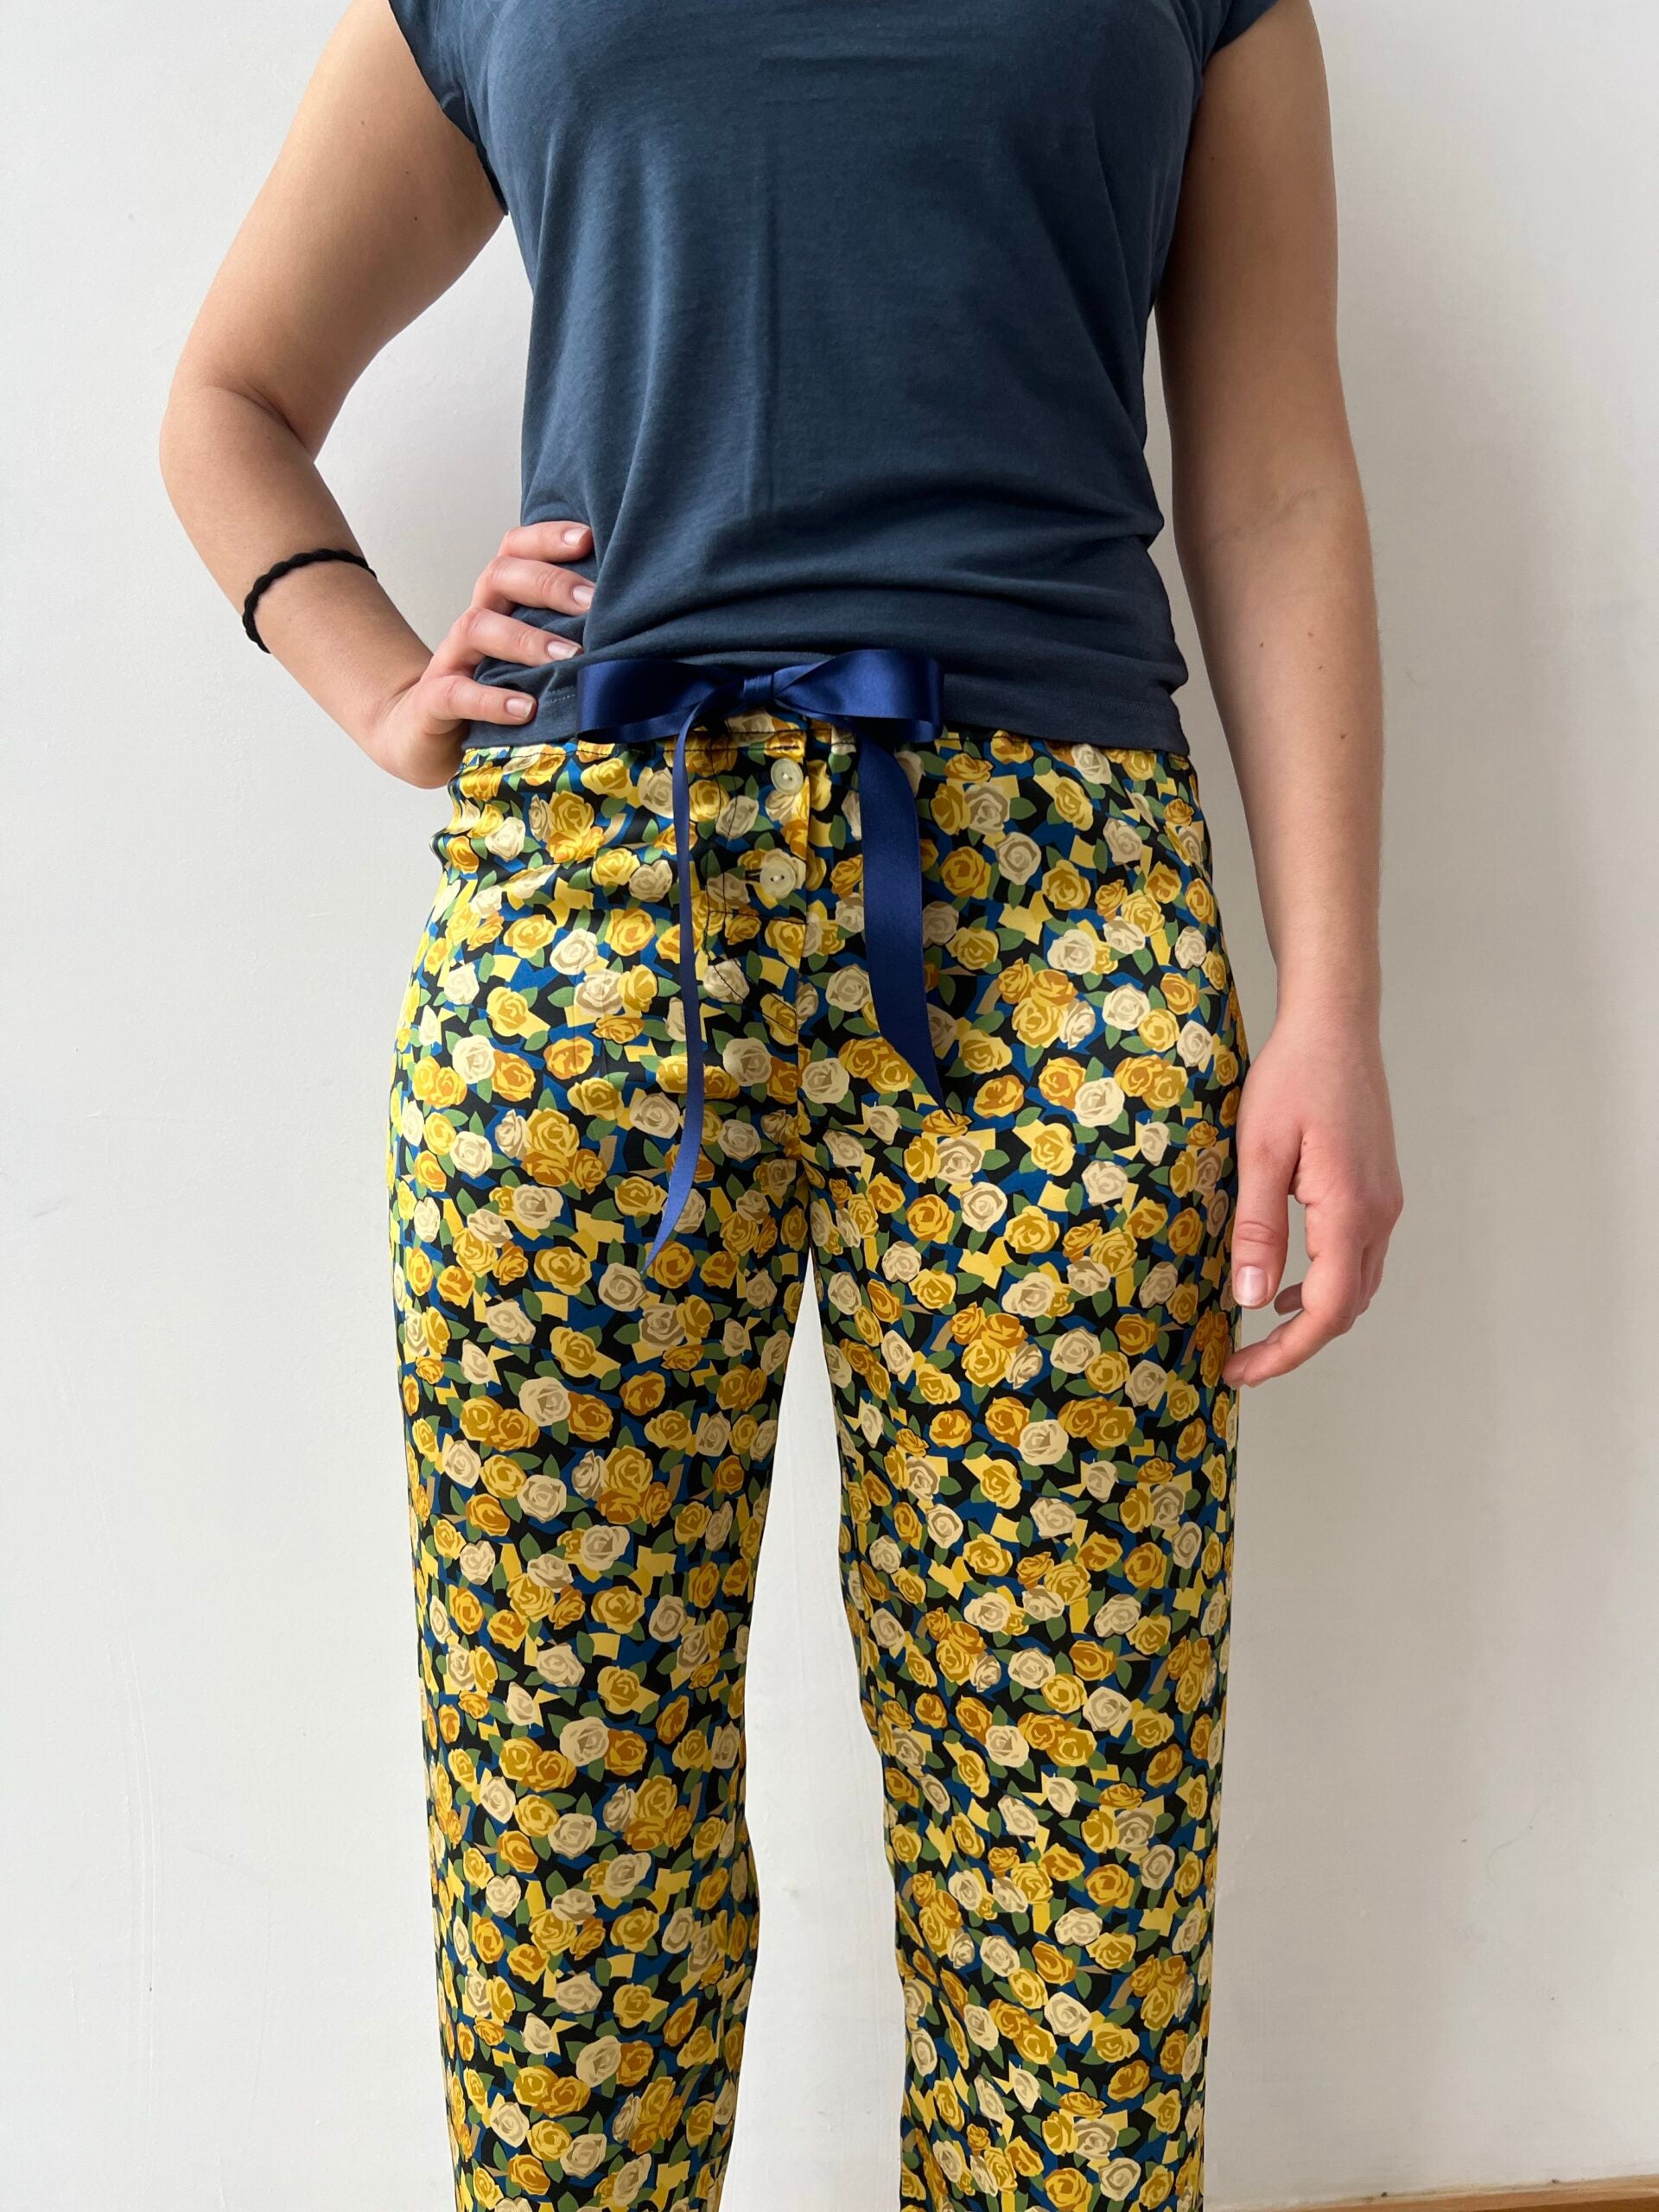  Women's Pajama Pants Sunflower Flowers Yellow Retro